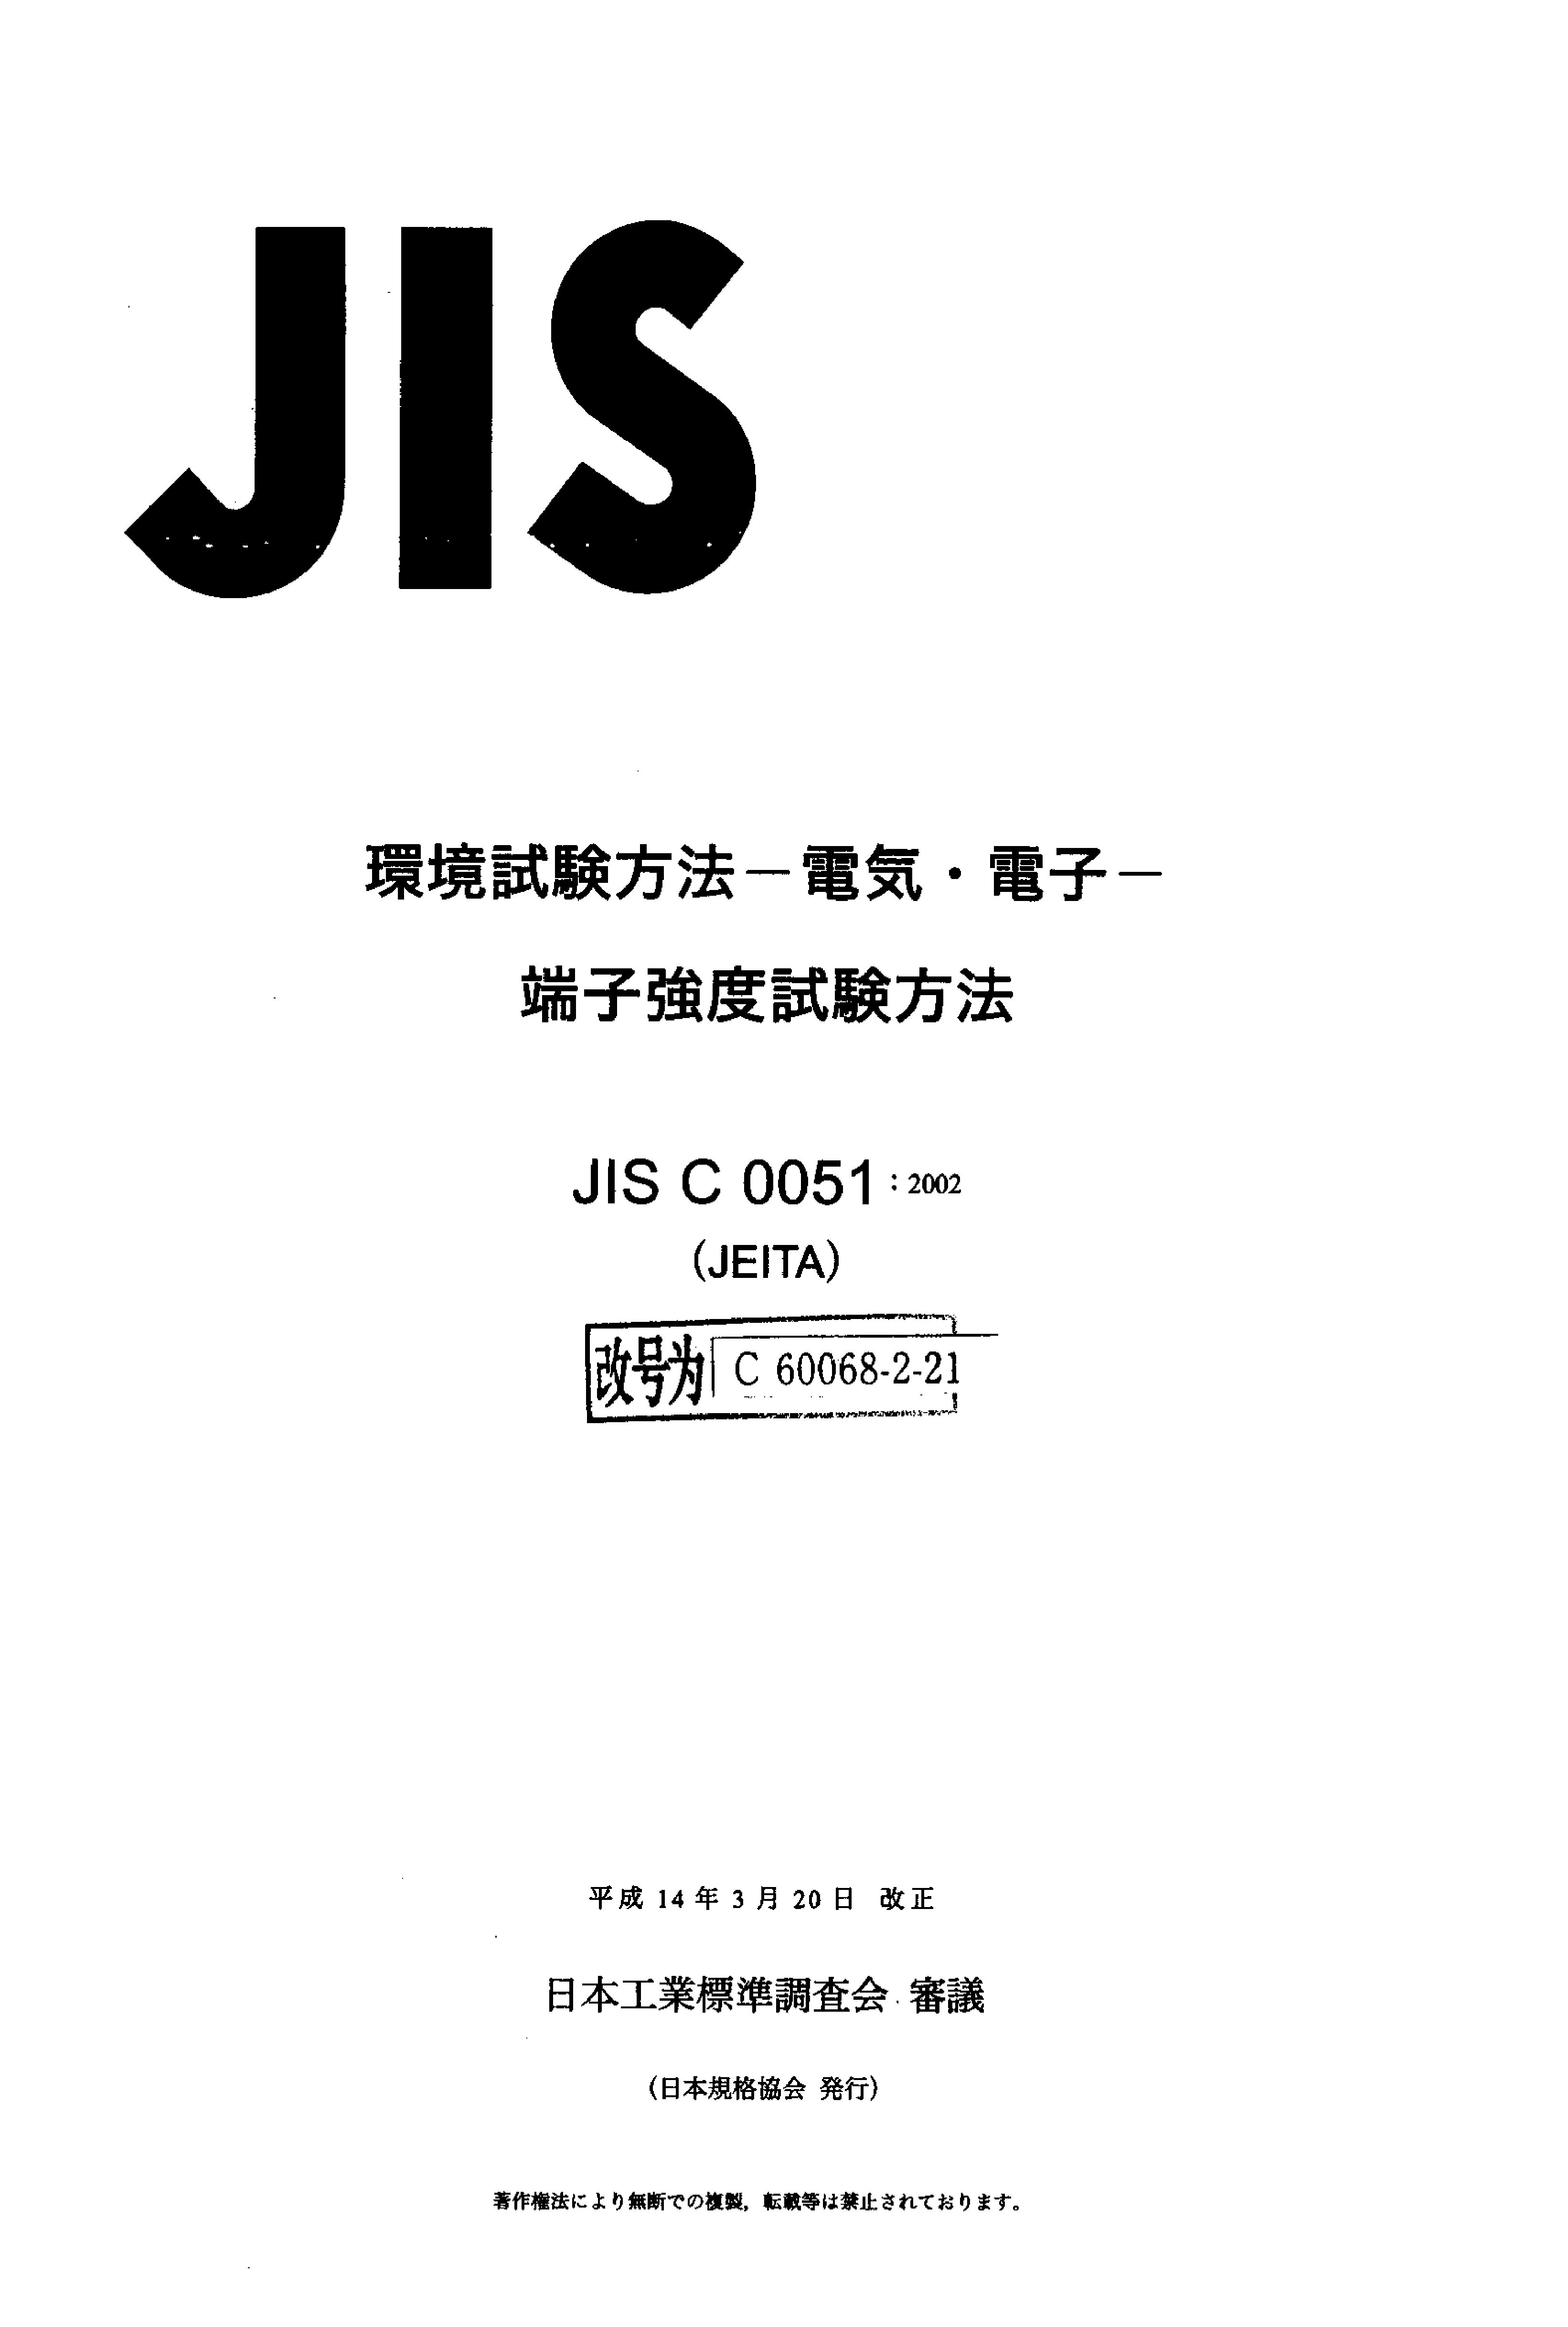 JIS C60068-2-21-2002